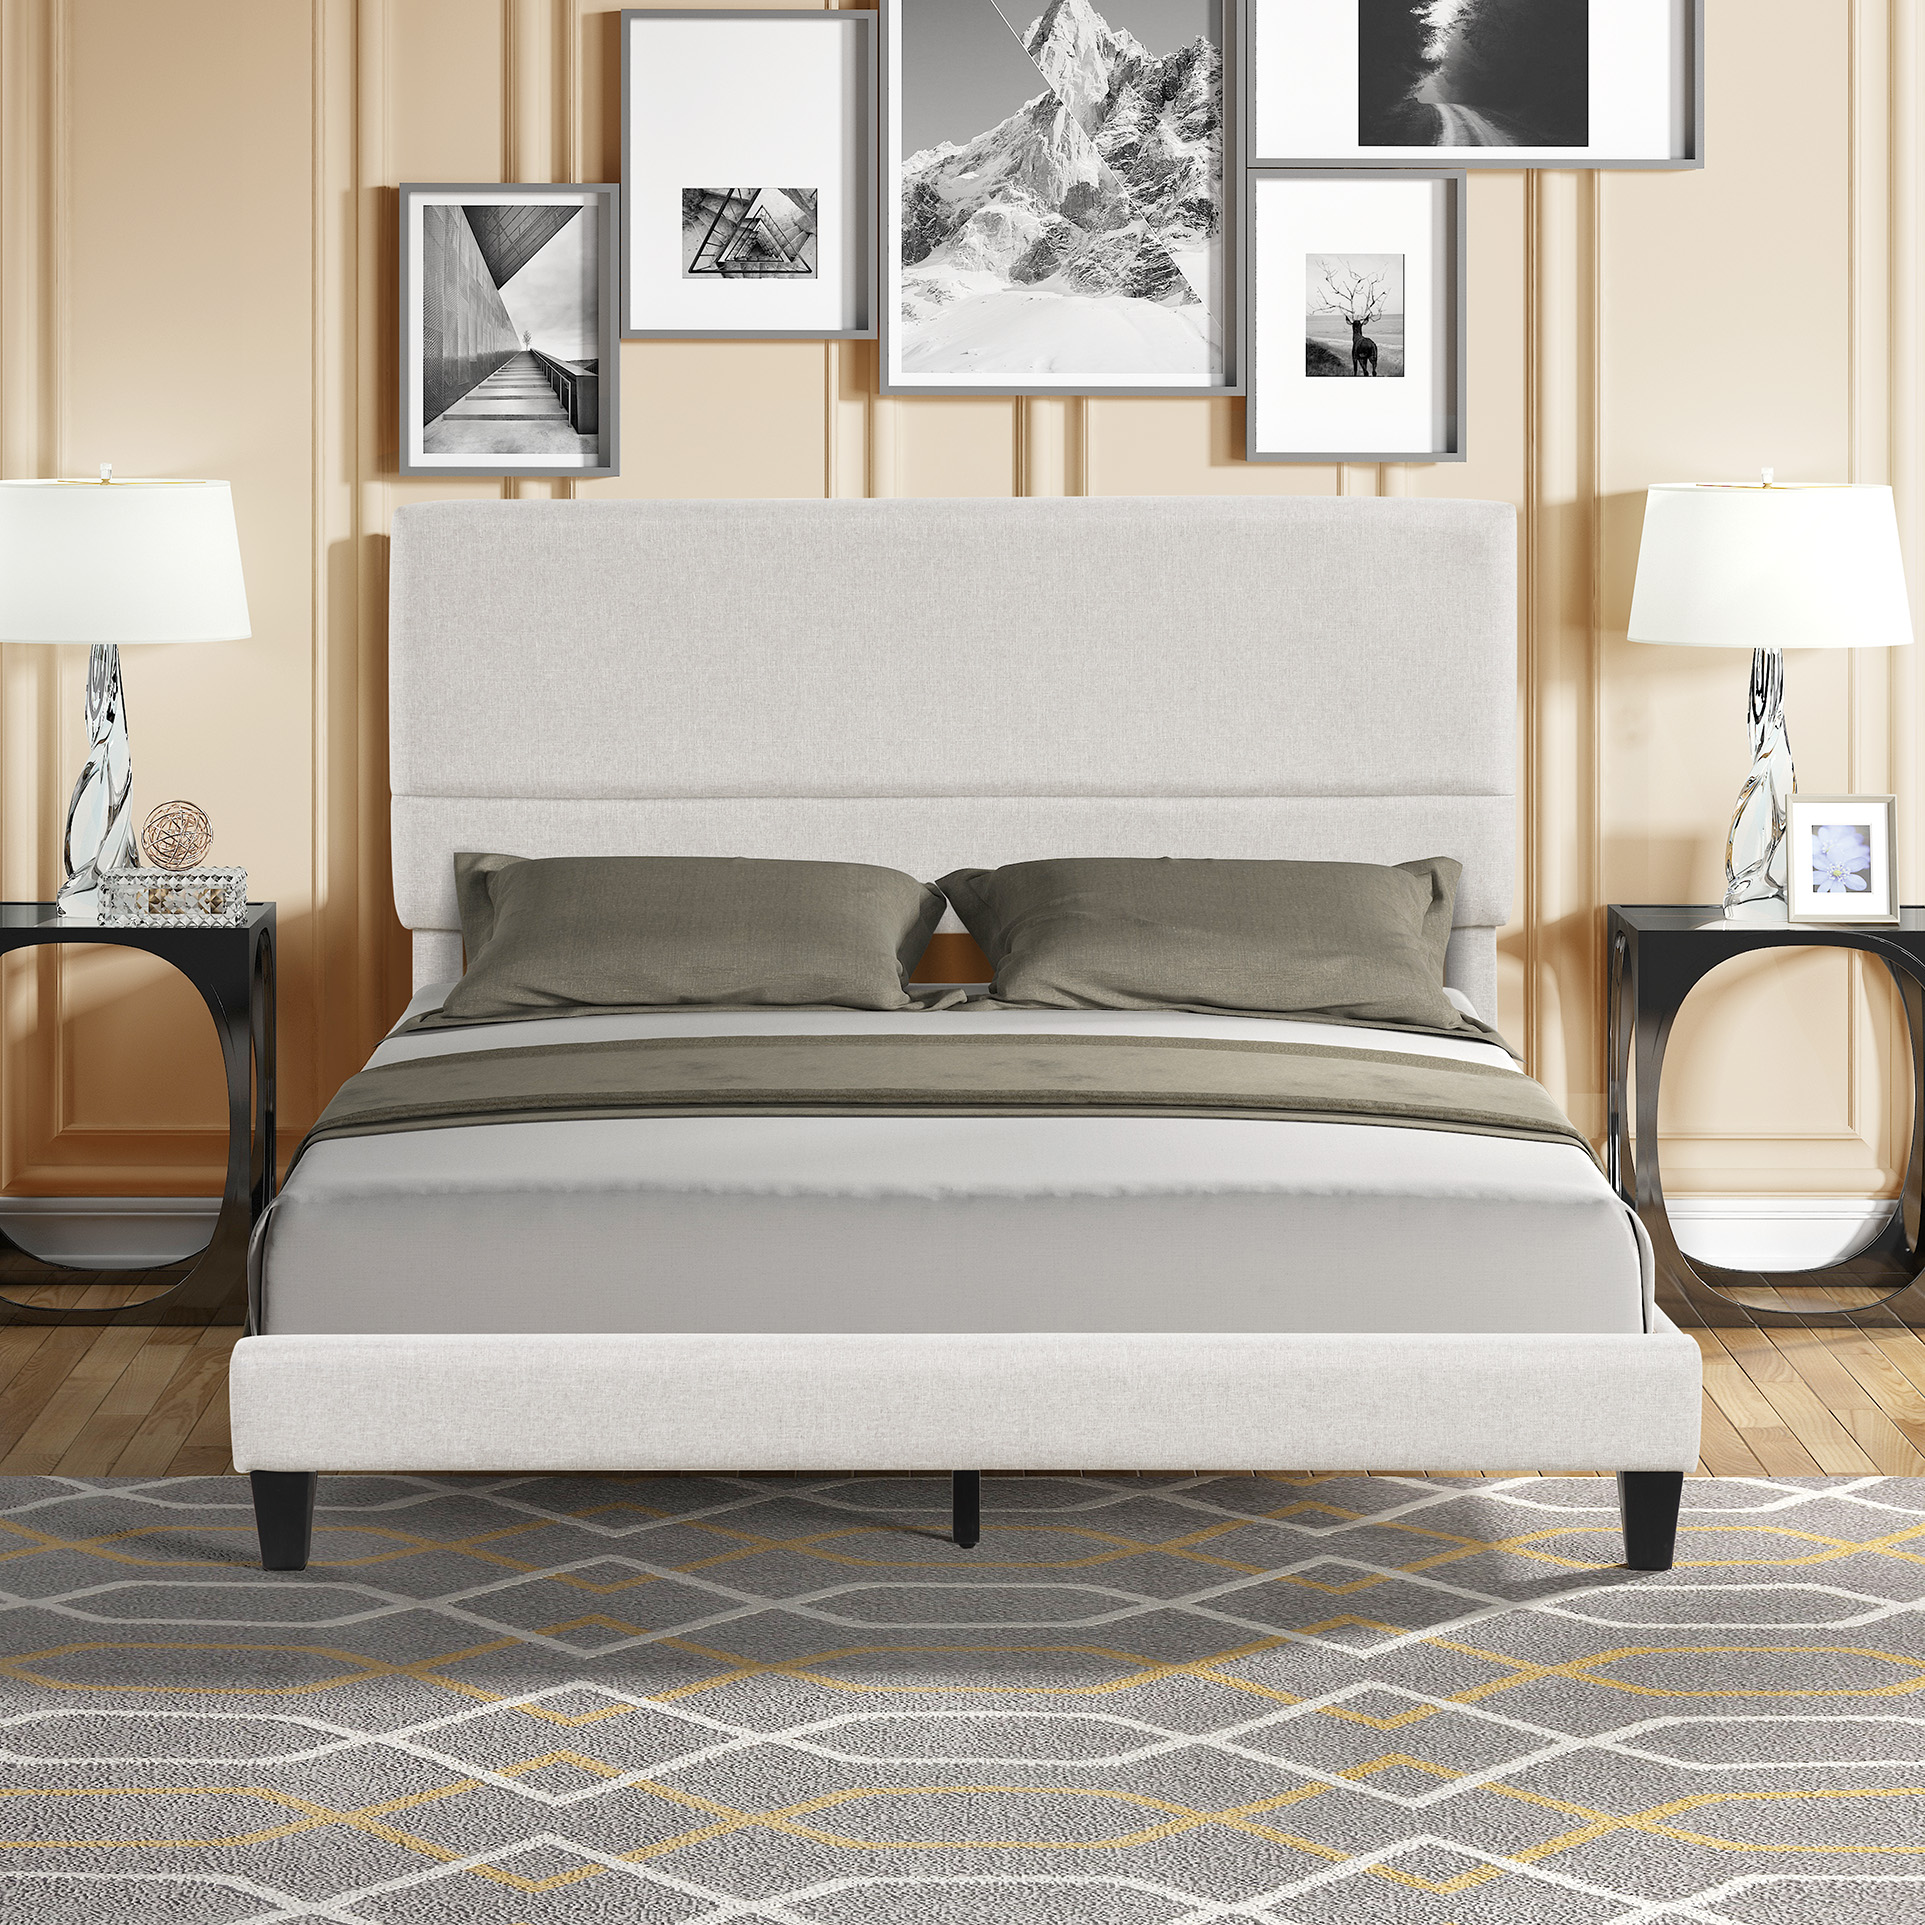 Details about   Platform Frame Slats Bed Queen Size Modern Bed Faux Upholstered Headboard Black 